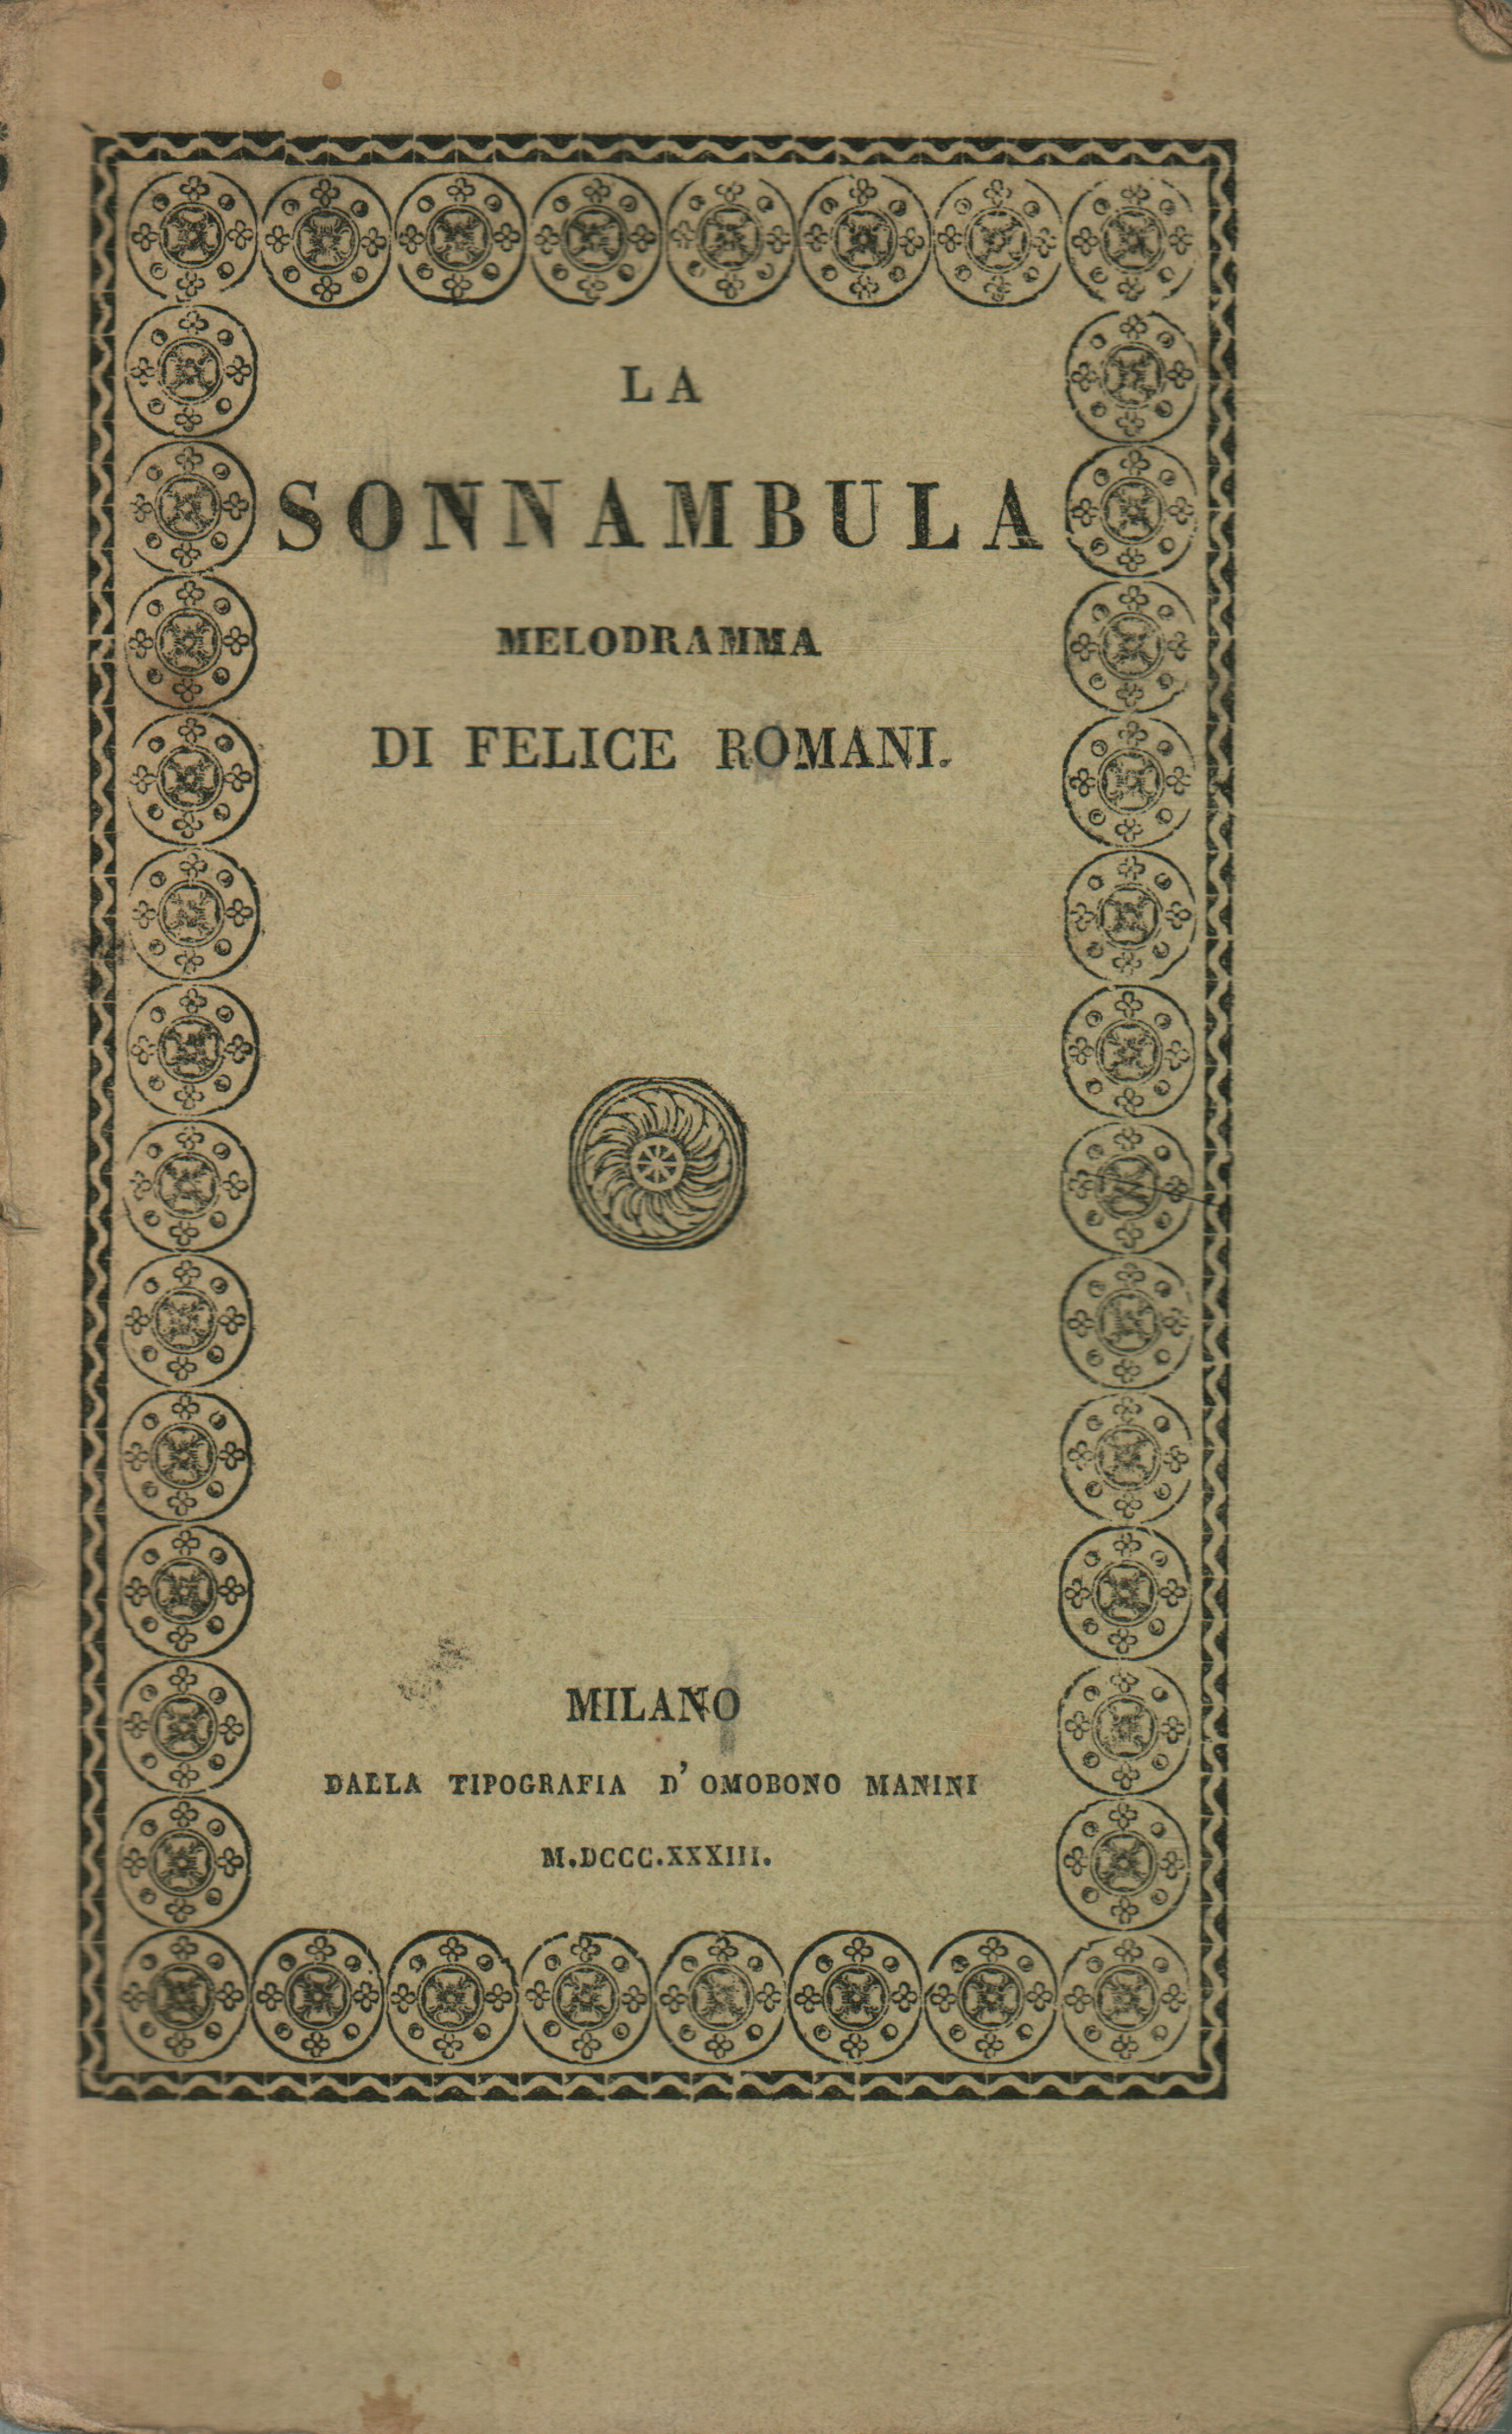 La sonnambula melodrama von Felice Roma,La sonnambula melodrama von Felice Roma,La sonnambula melodrama von Felice Roma,La sonnambula melodrama von Felice Roma